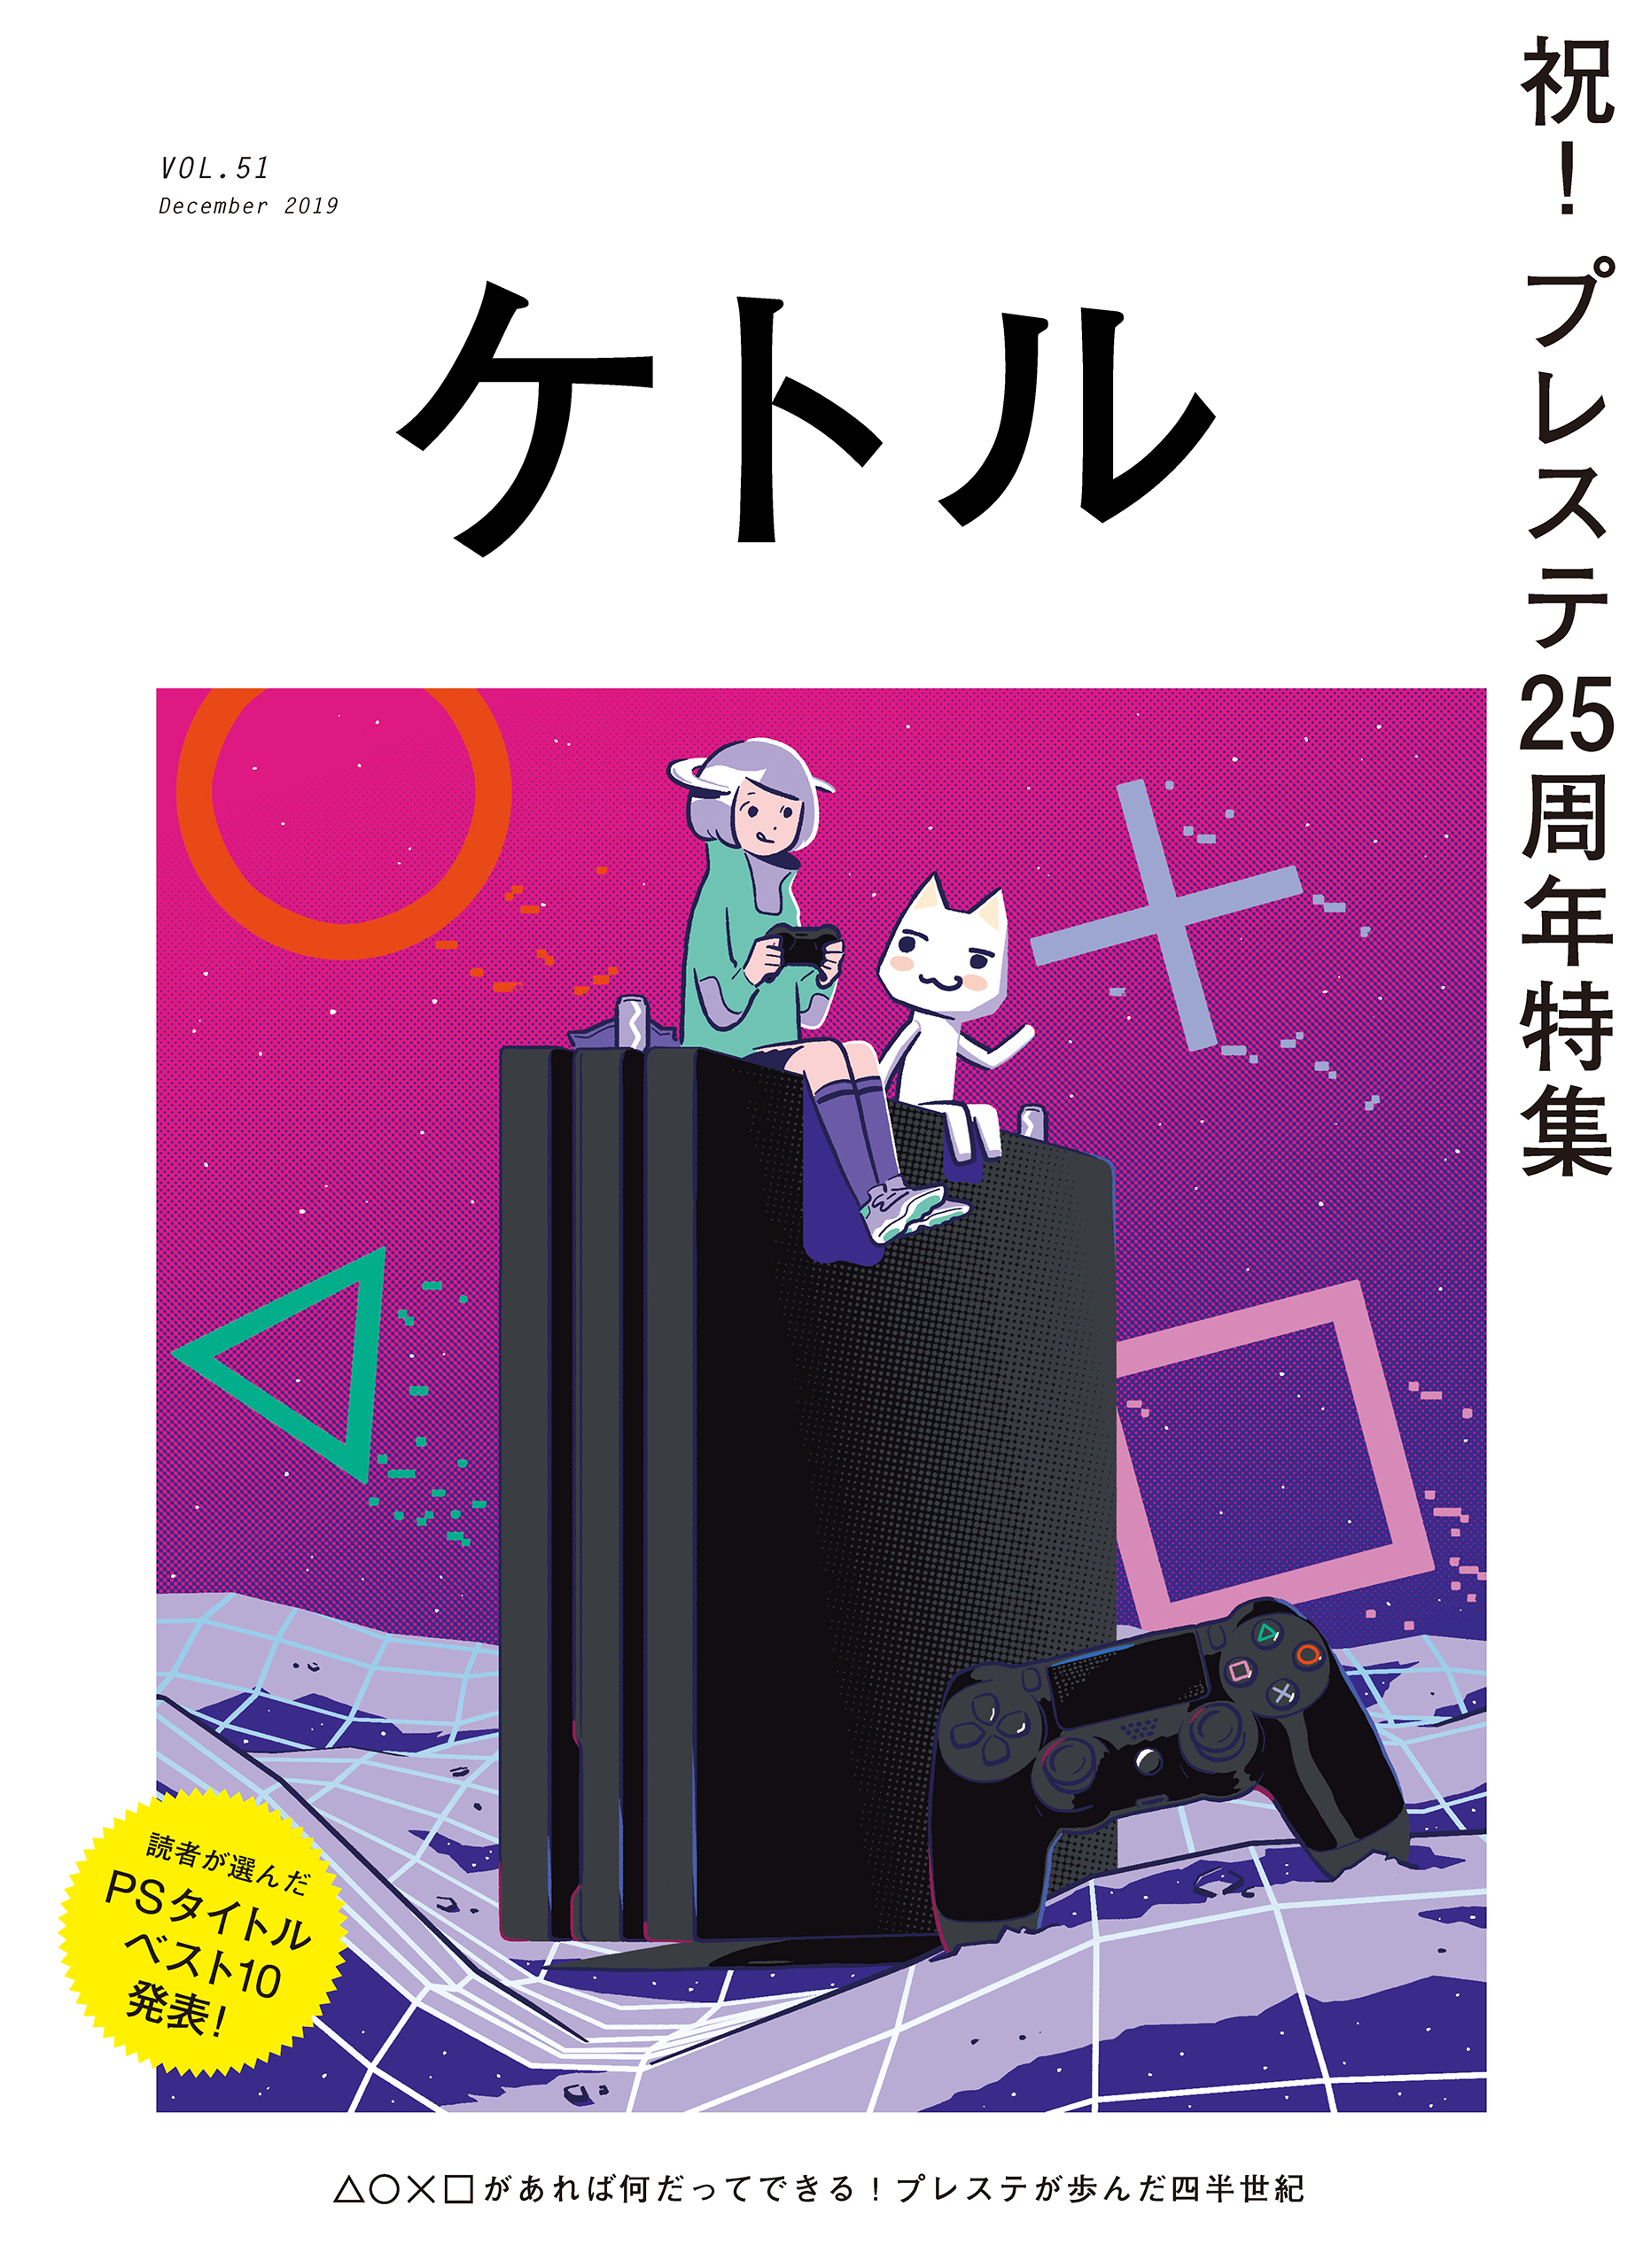 ケトル Vol.51 2019年12月発売号 - ケトル編集部 - 漫画・ラノベ（小説